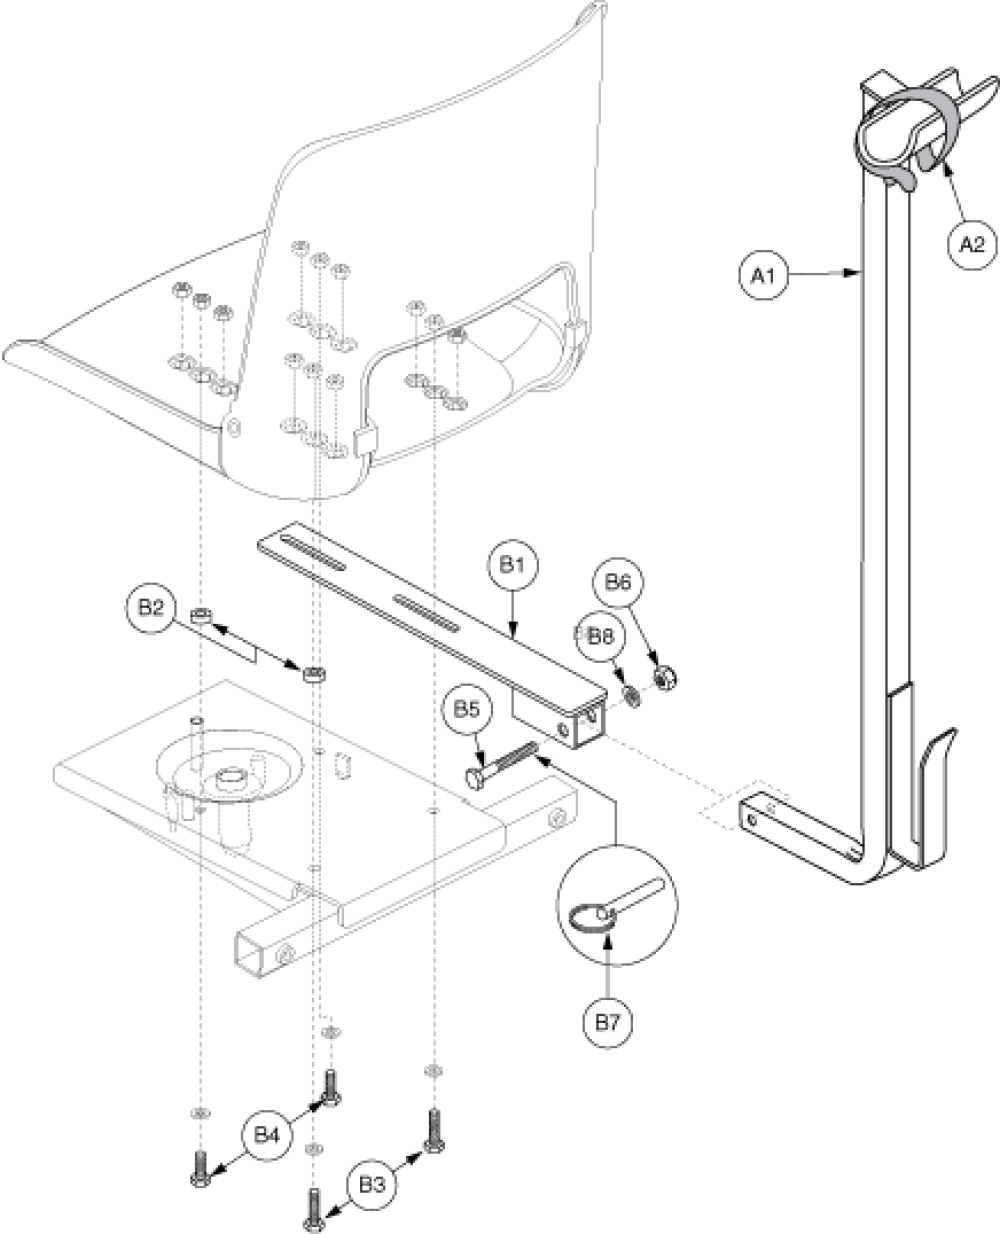 Walker Holder - Molded Plastic Seat parts diagram